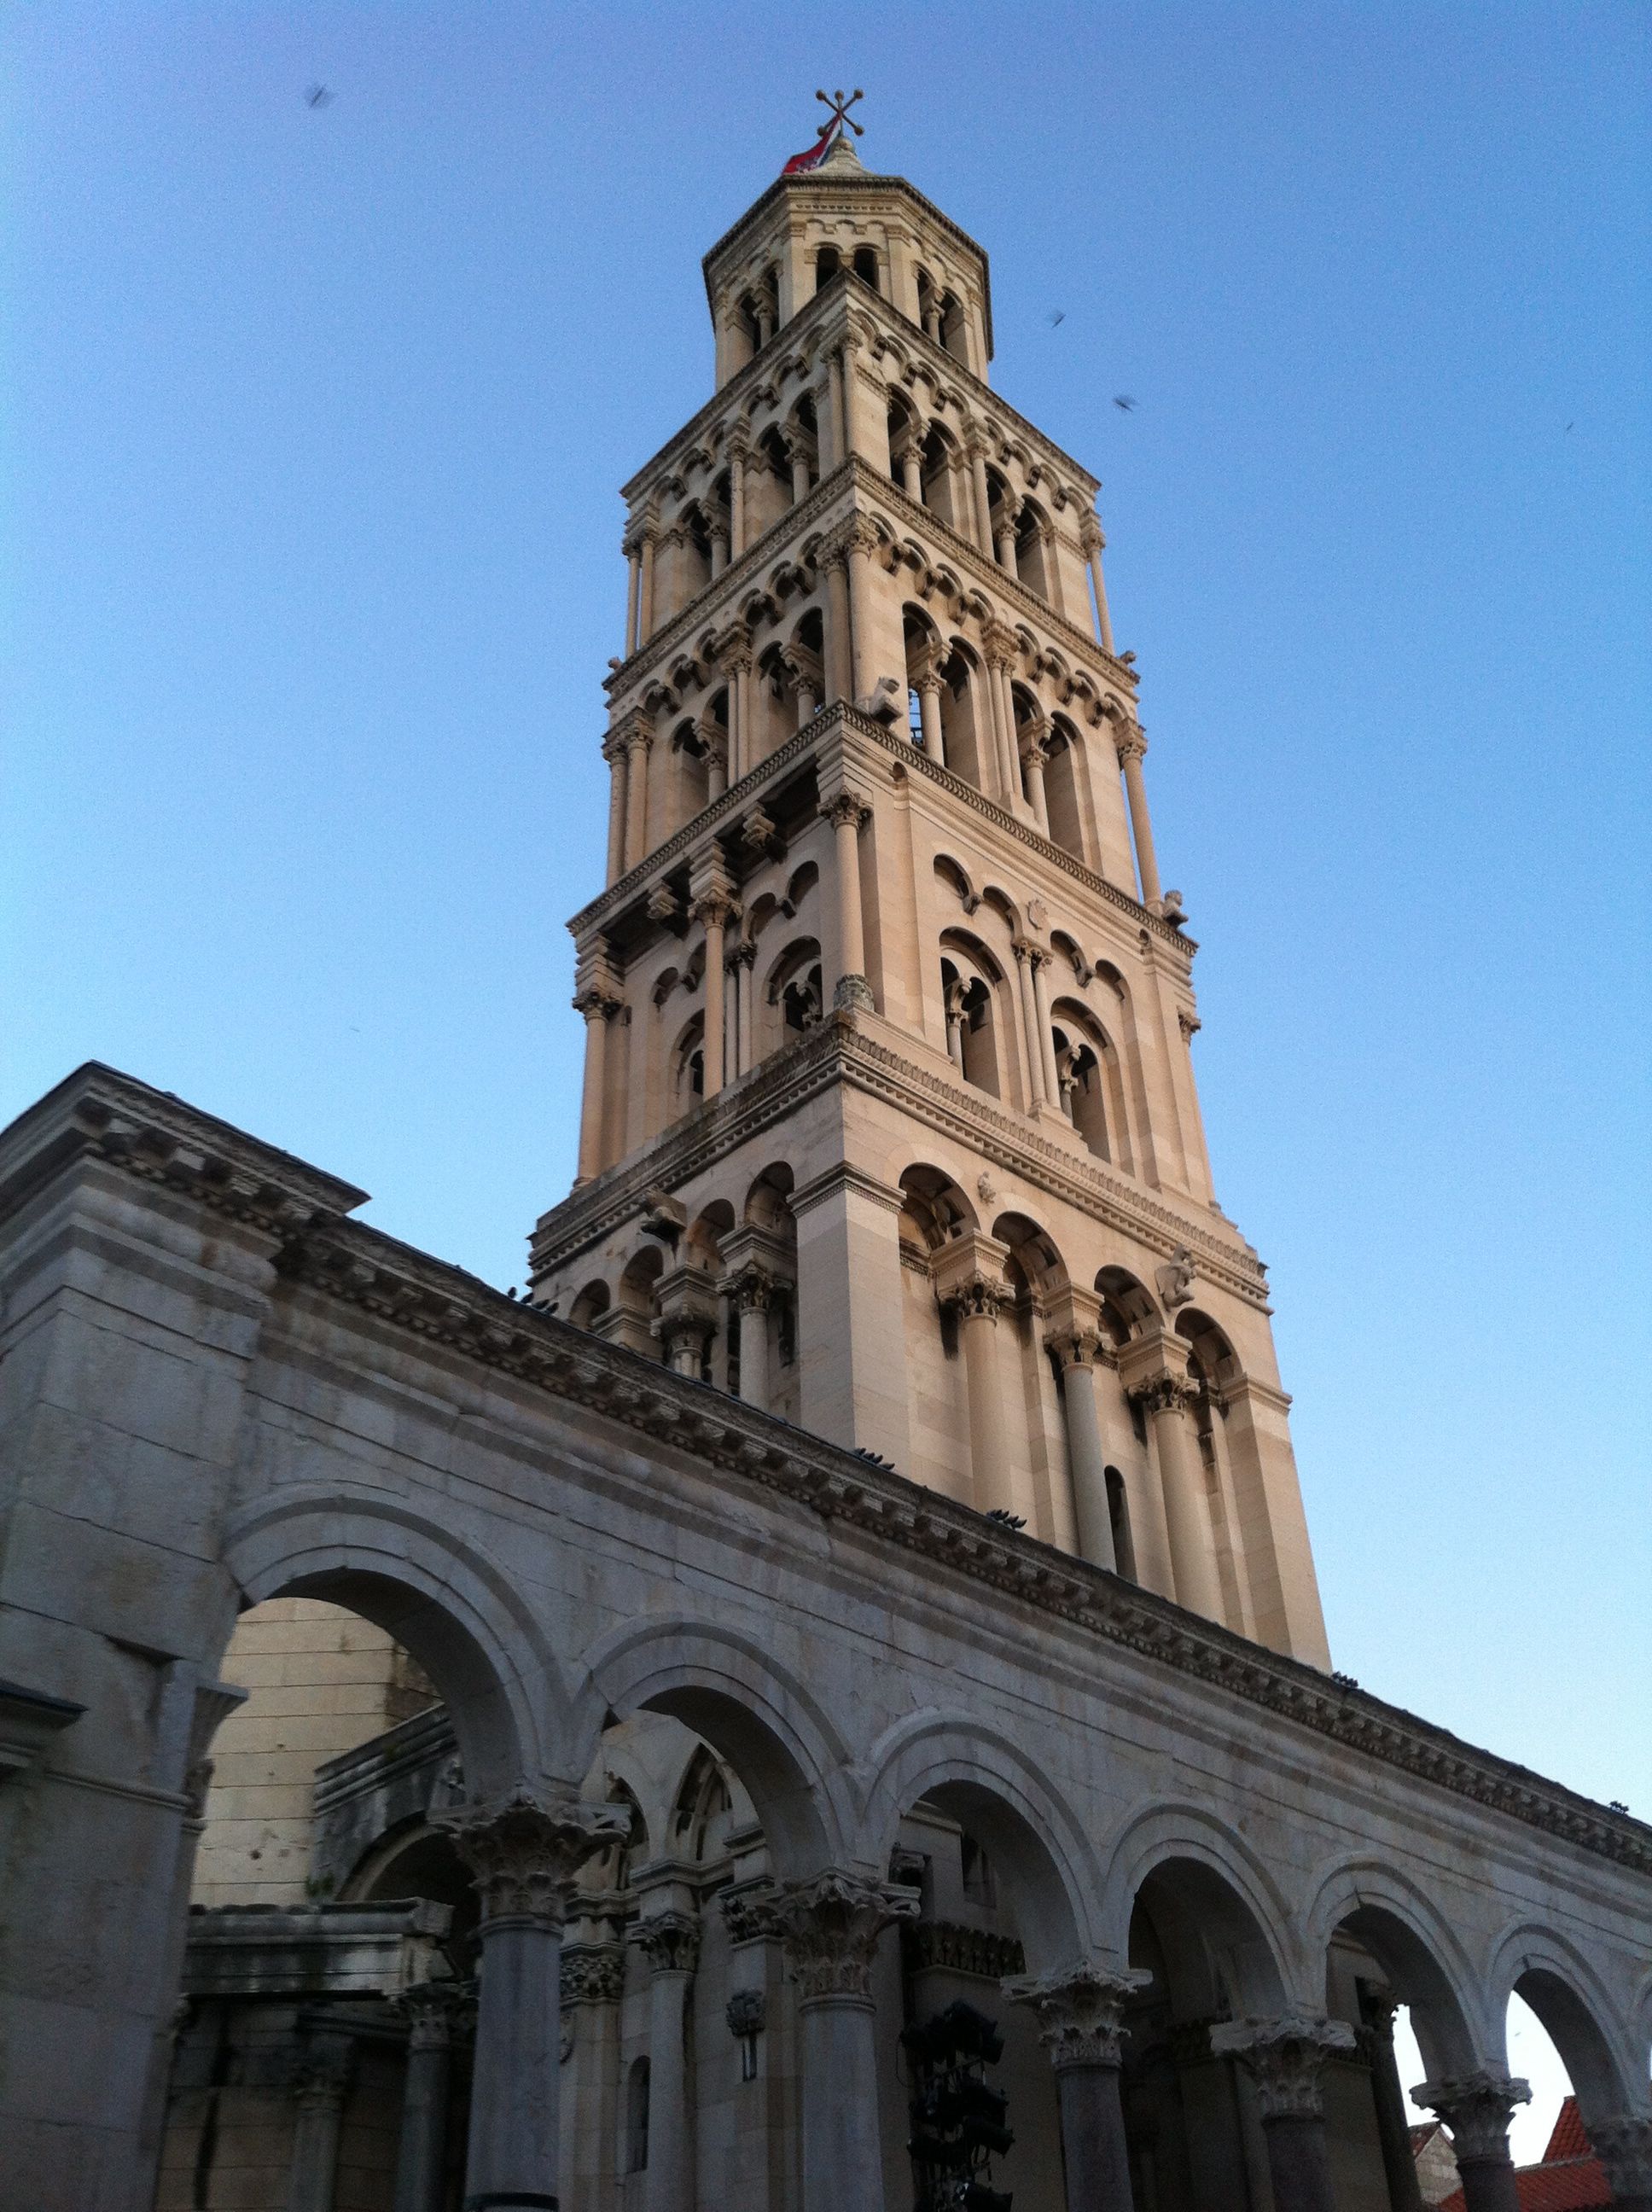 Una de ls vistas más conocidas de Split: la arquería del Peristilo y la torre medieval de la catedral de St. Duje, construida en 1.100.Fuente de imágenes: Ruth Cereceda